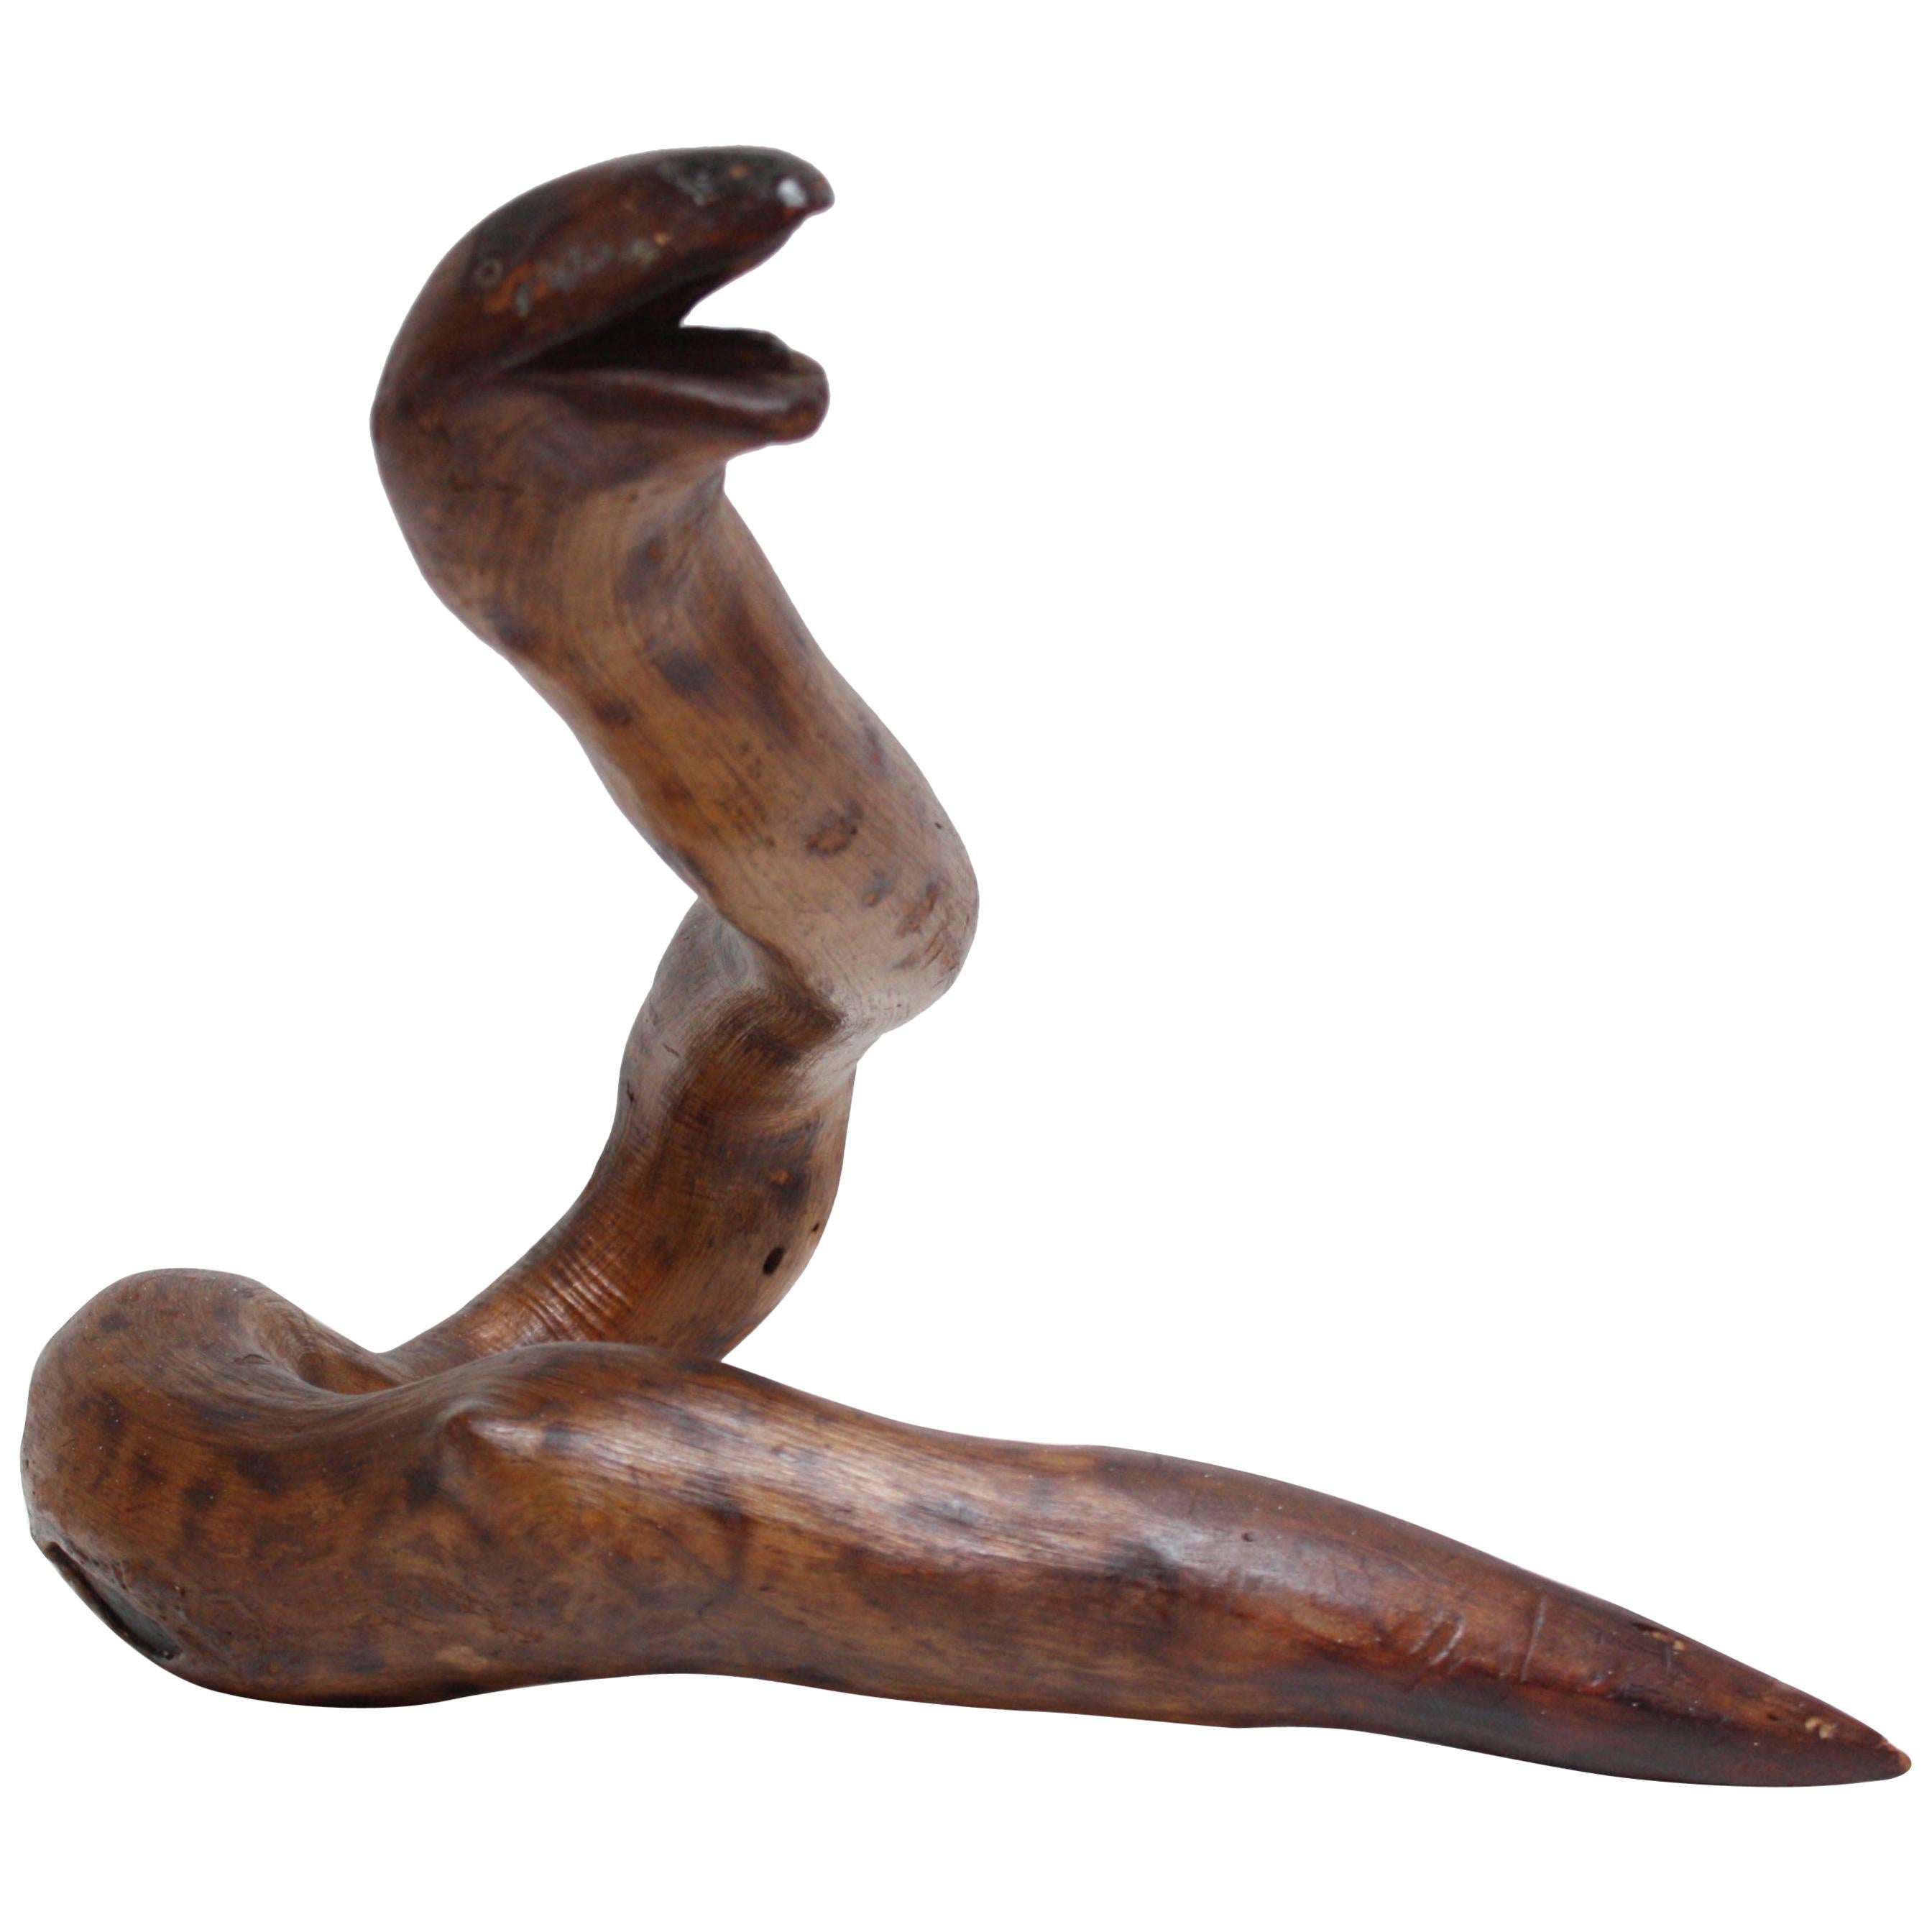 Primitive Hand-Carved Wooden Snake